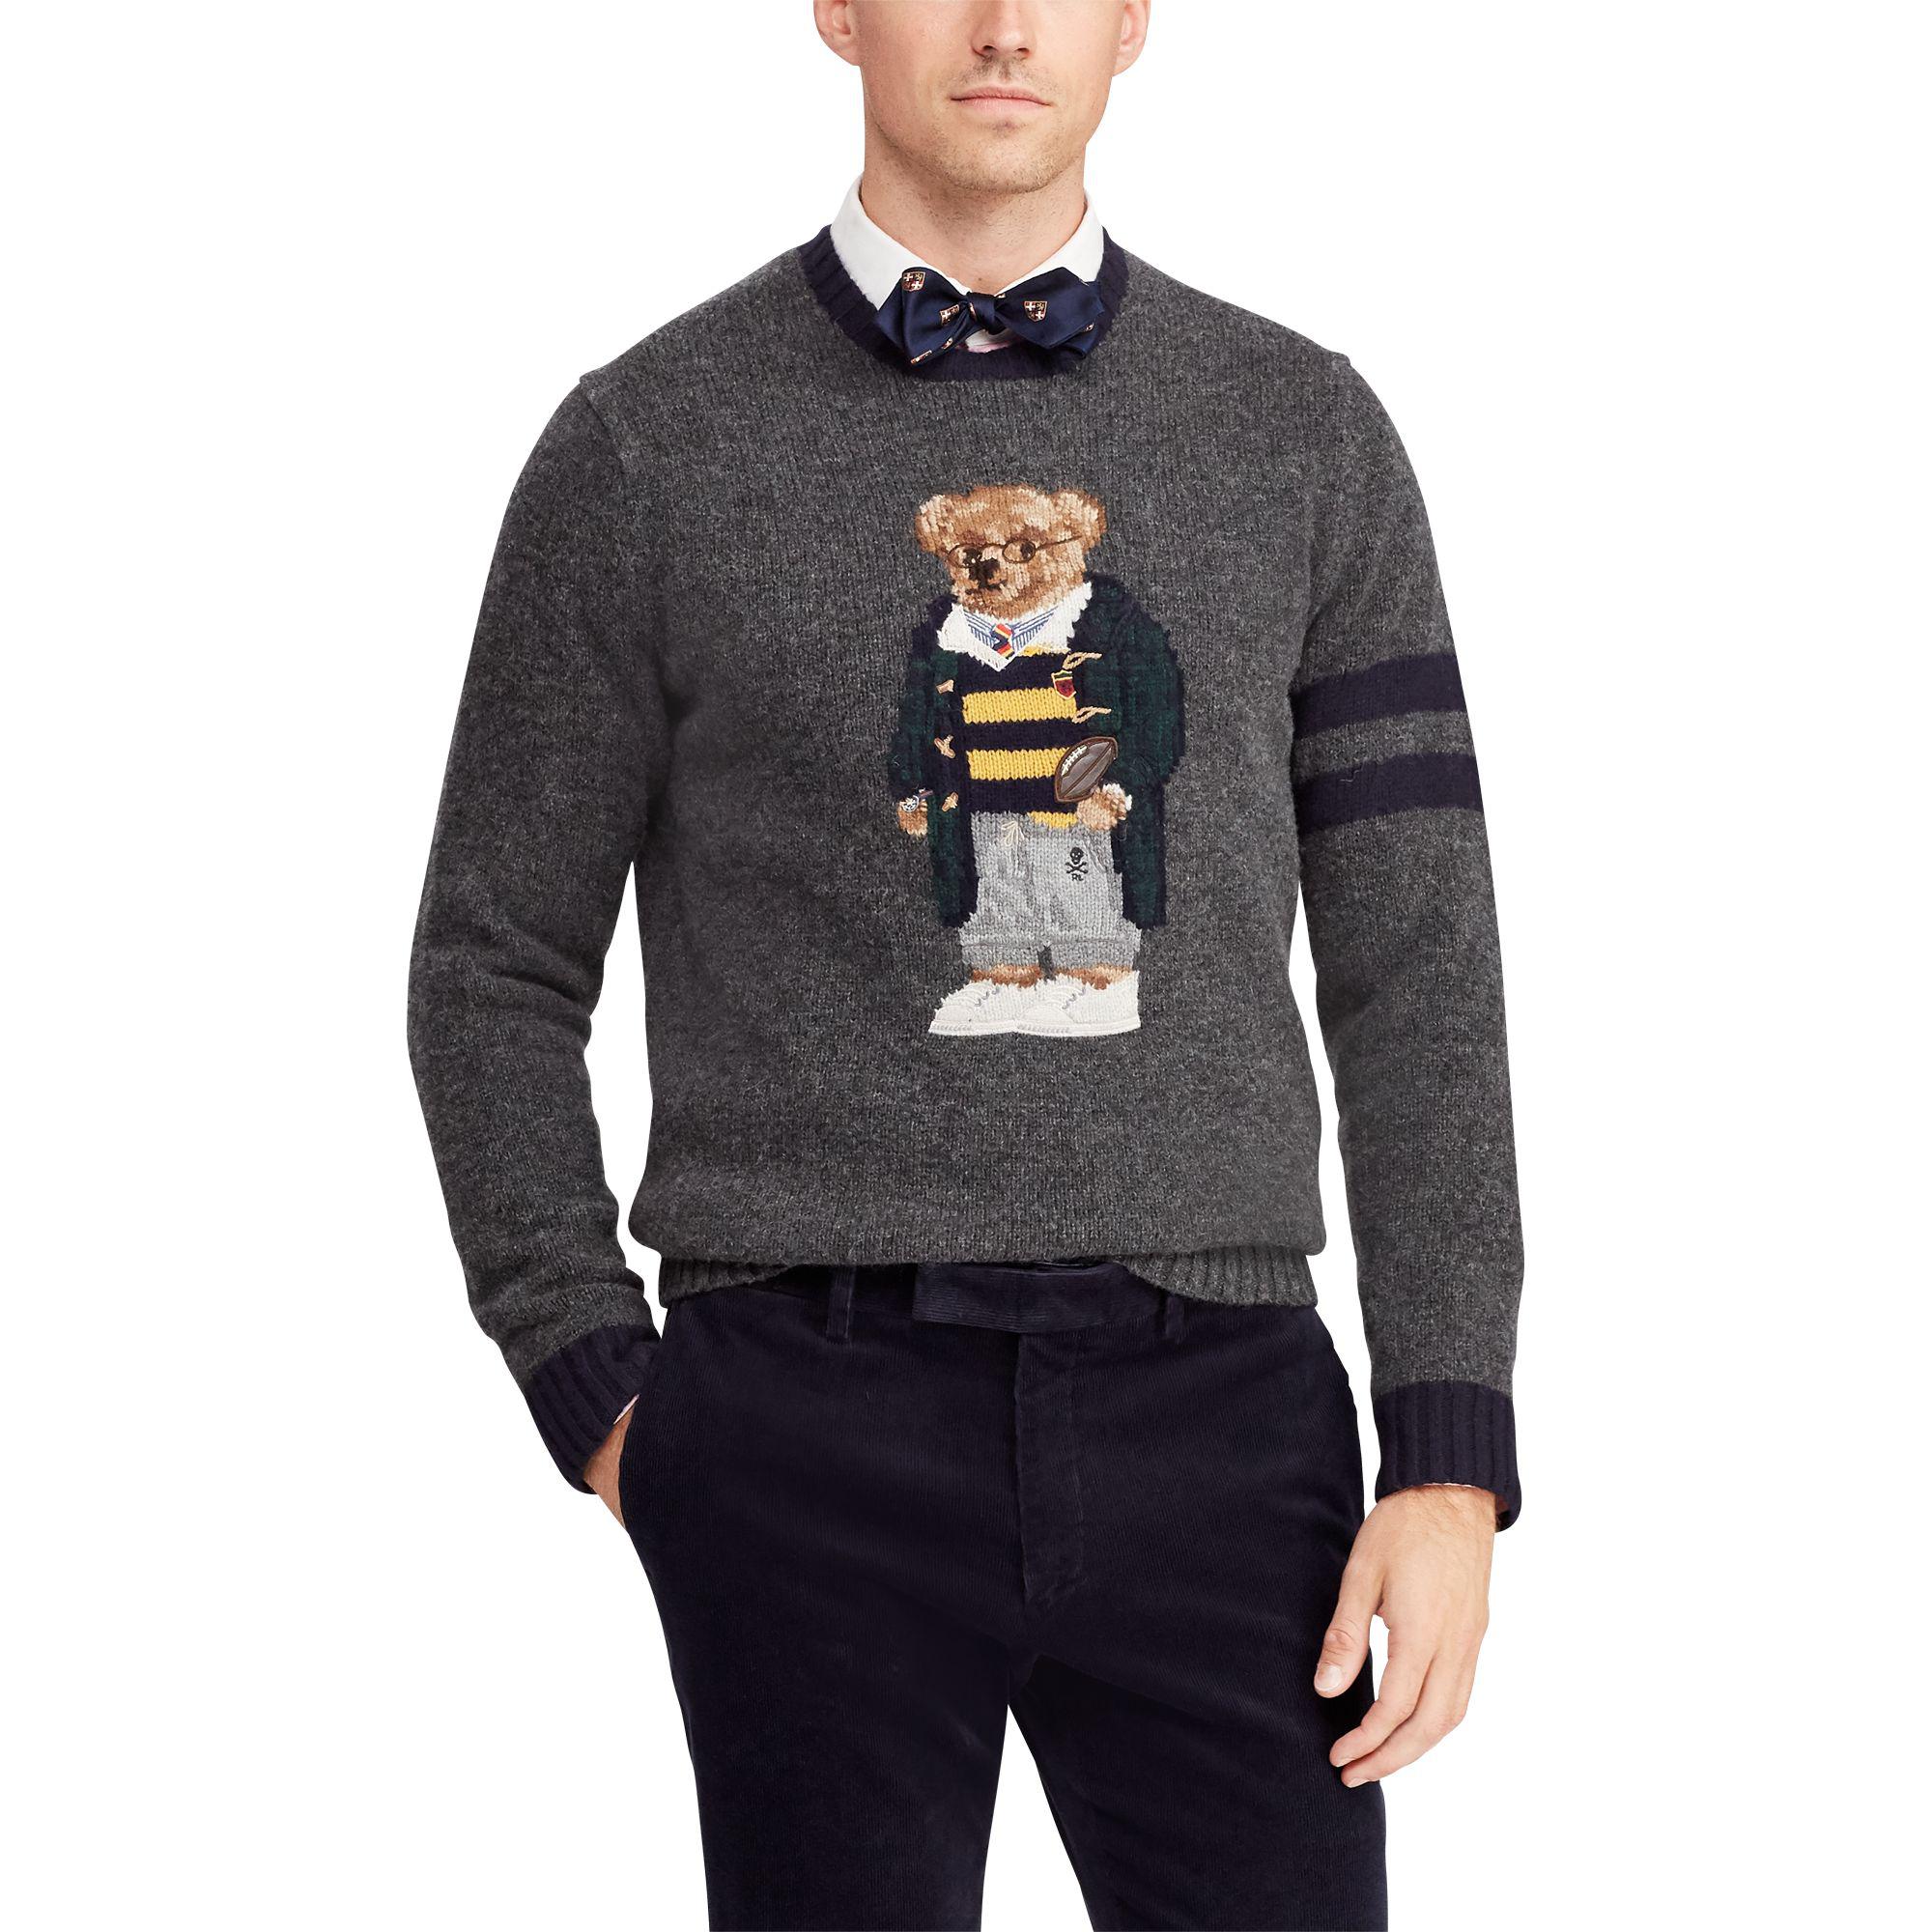 ralph lauren sweater with bear